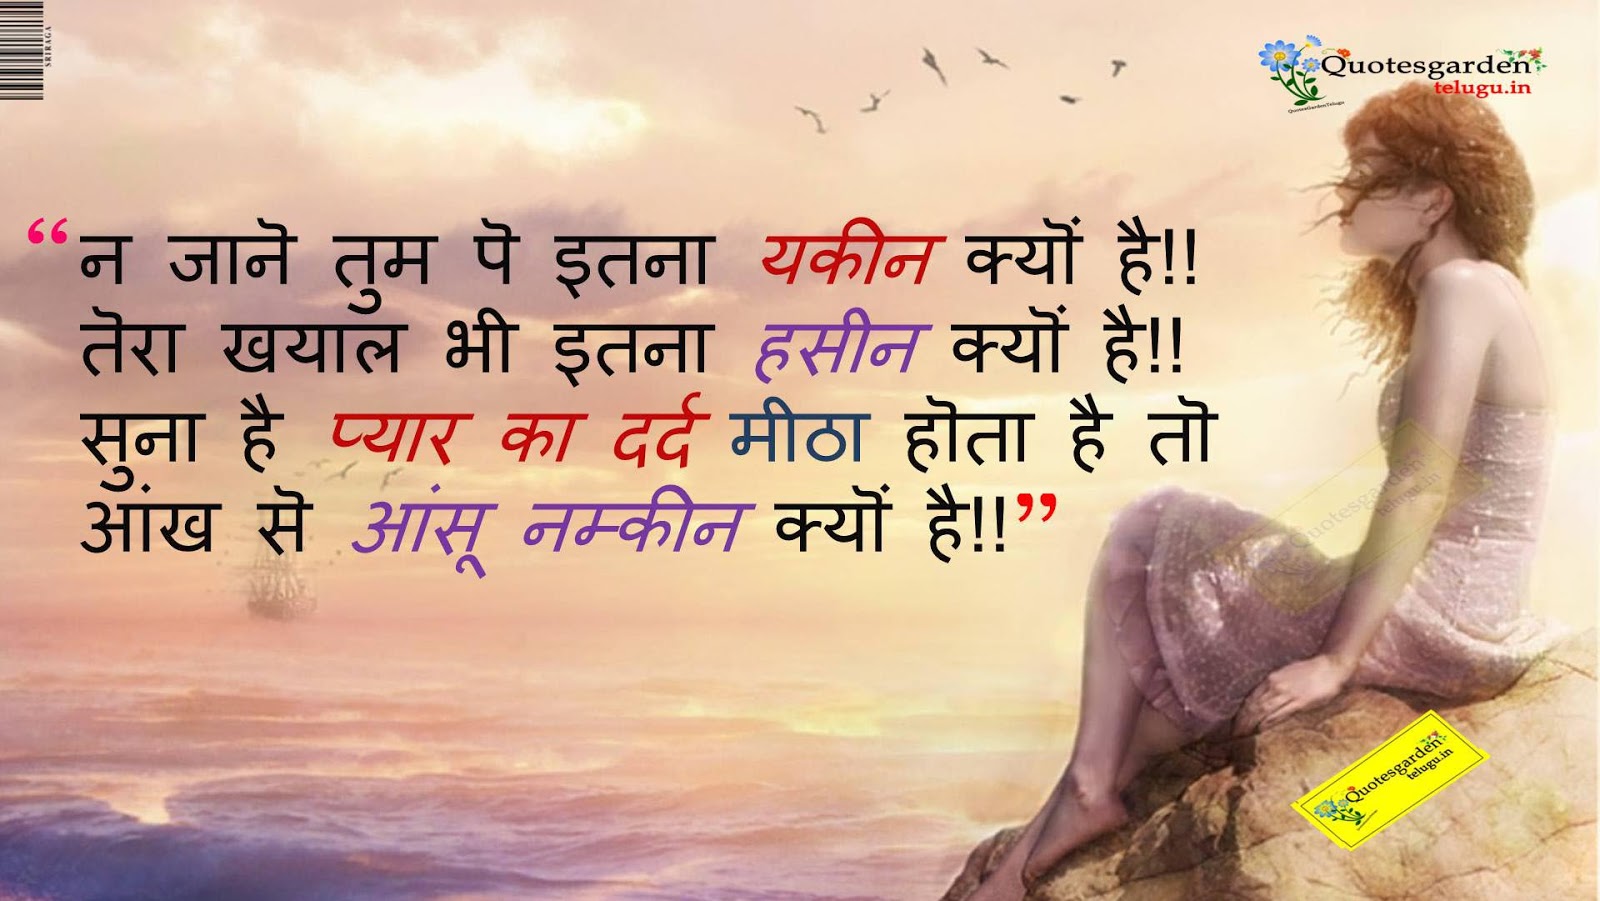 Heart touching Hindi Love quotes dard shayari HD Wallpapers 695 | QUOTES  GARDEN TELUGU | Telugu Quotes | English Quotes | Hindi Quotes |